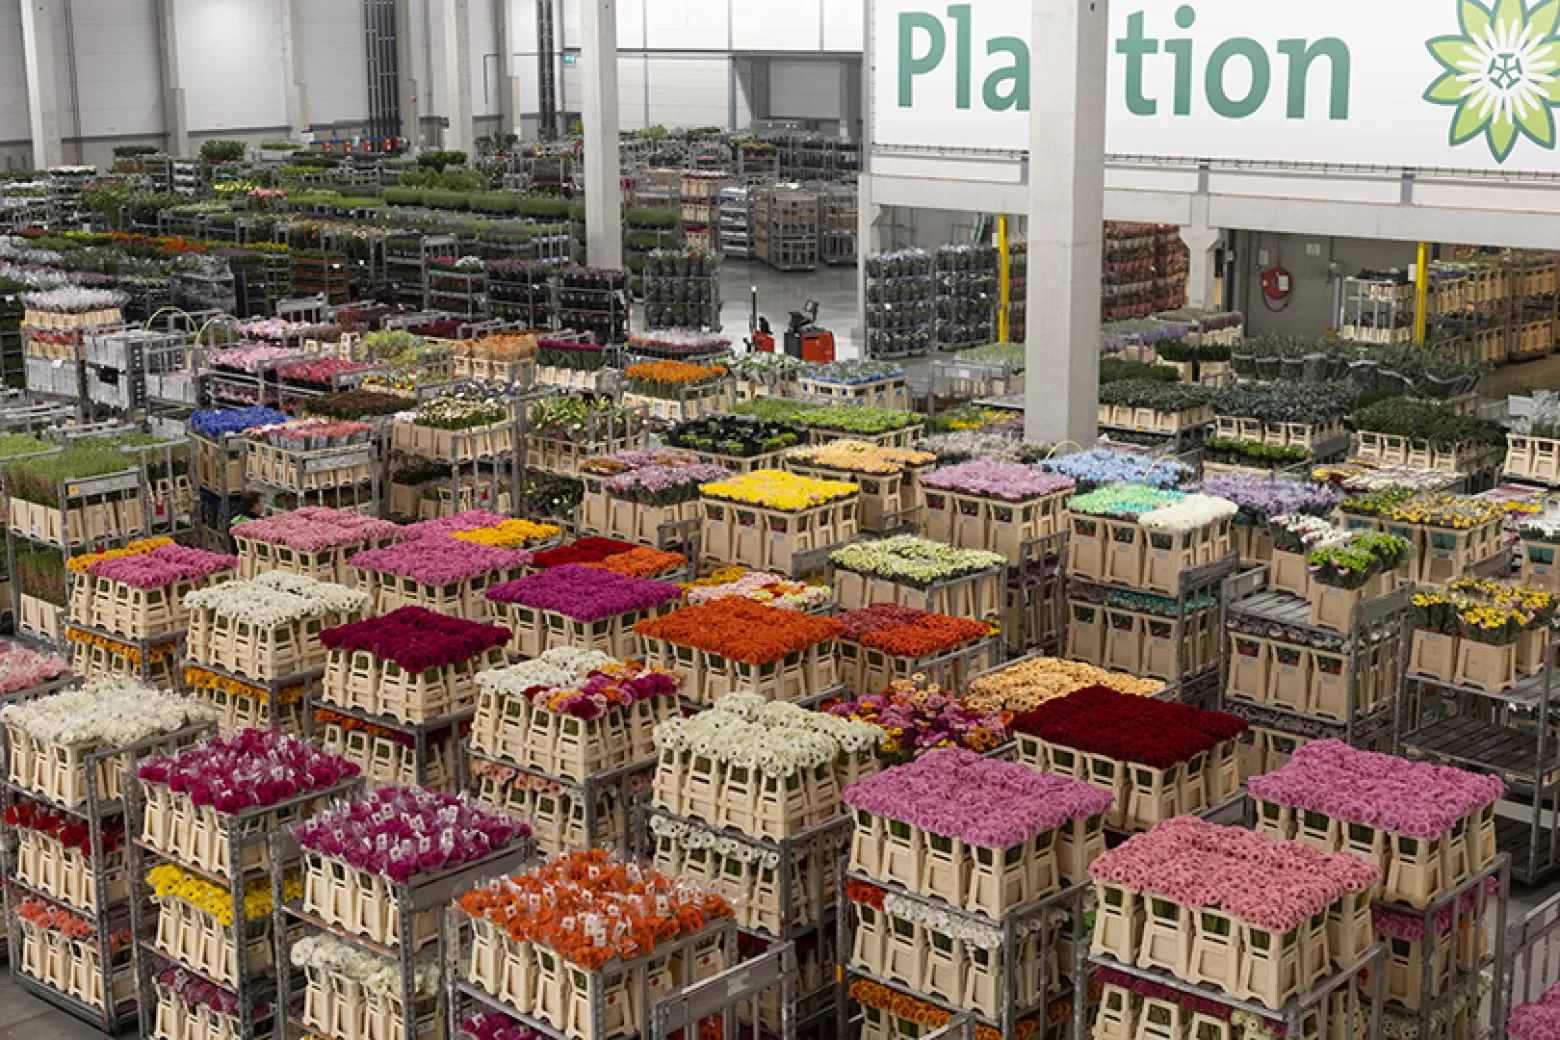 Plantion - Wholesale center